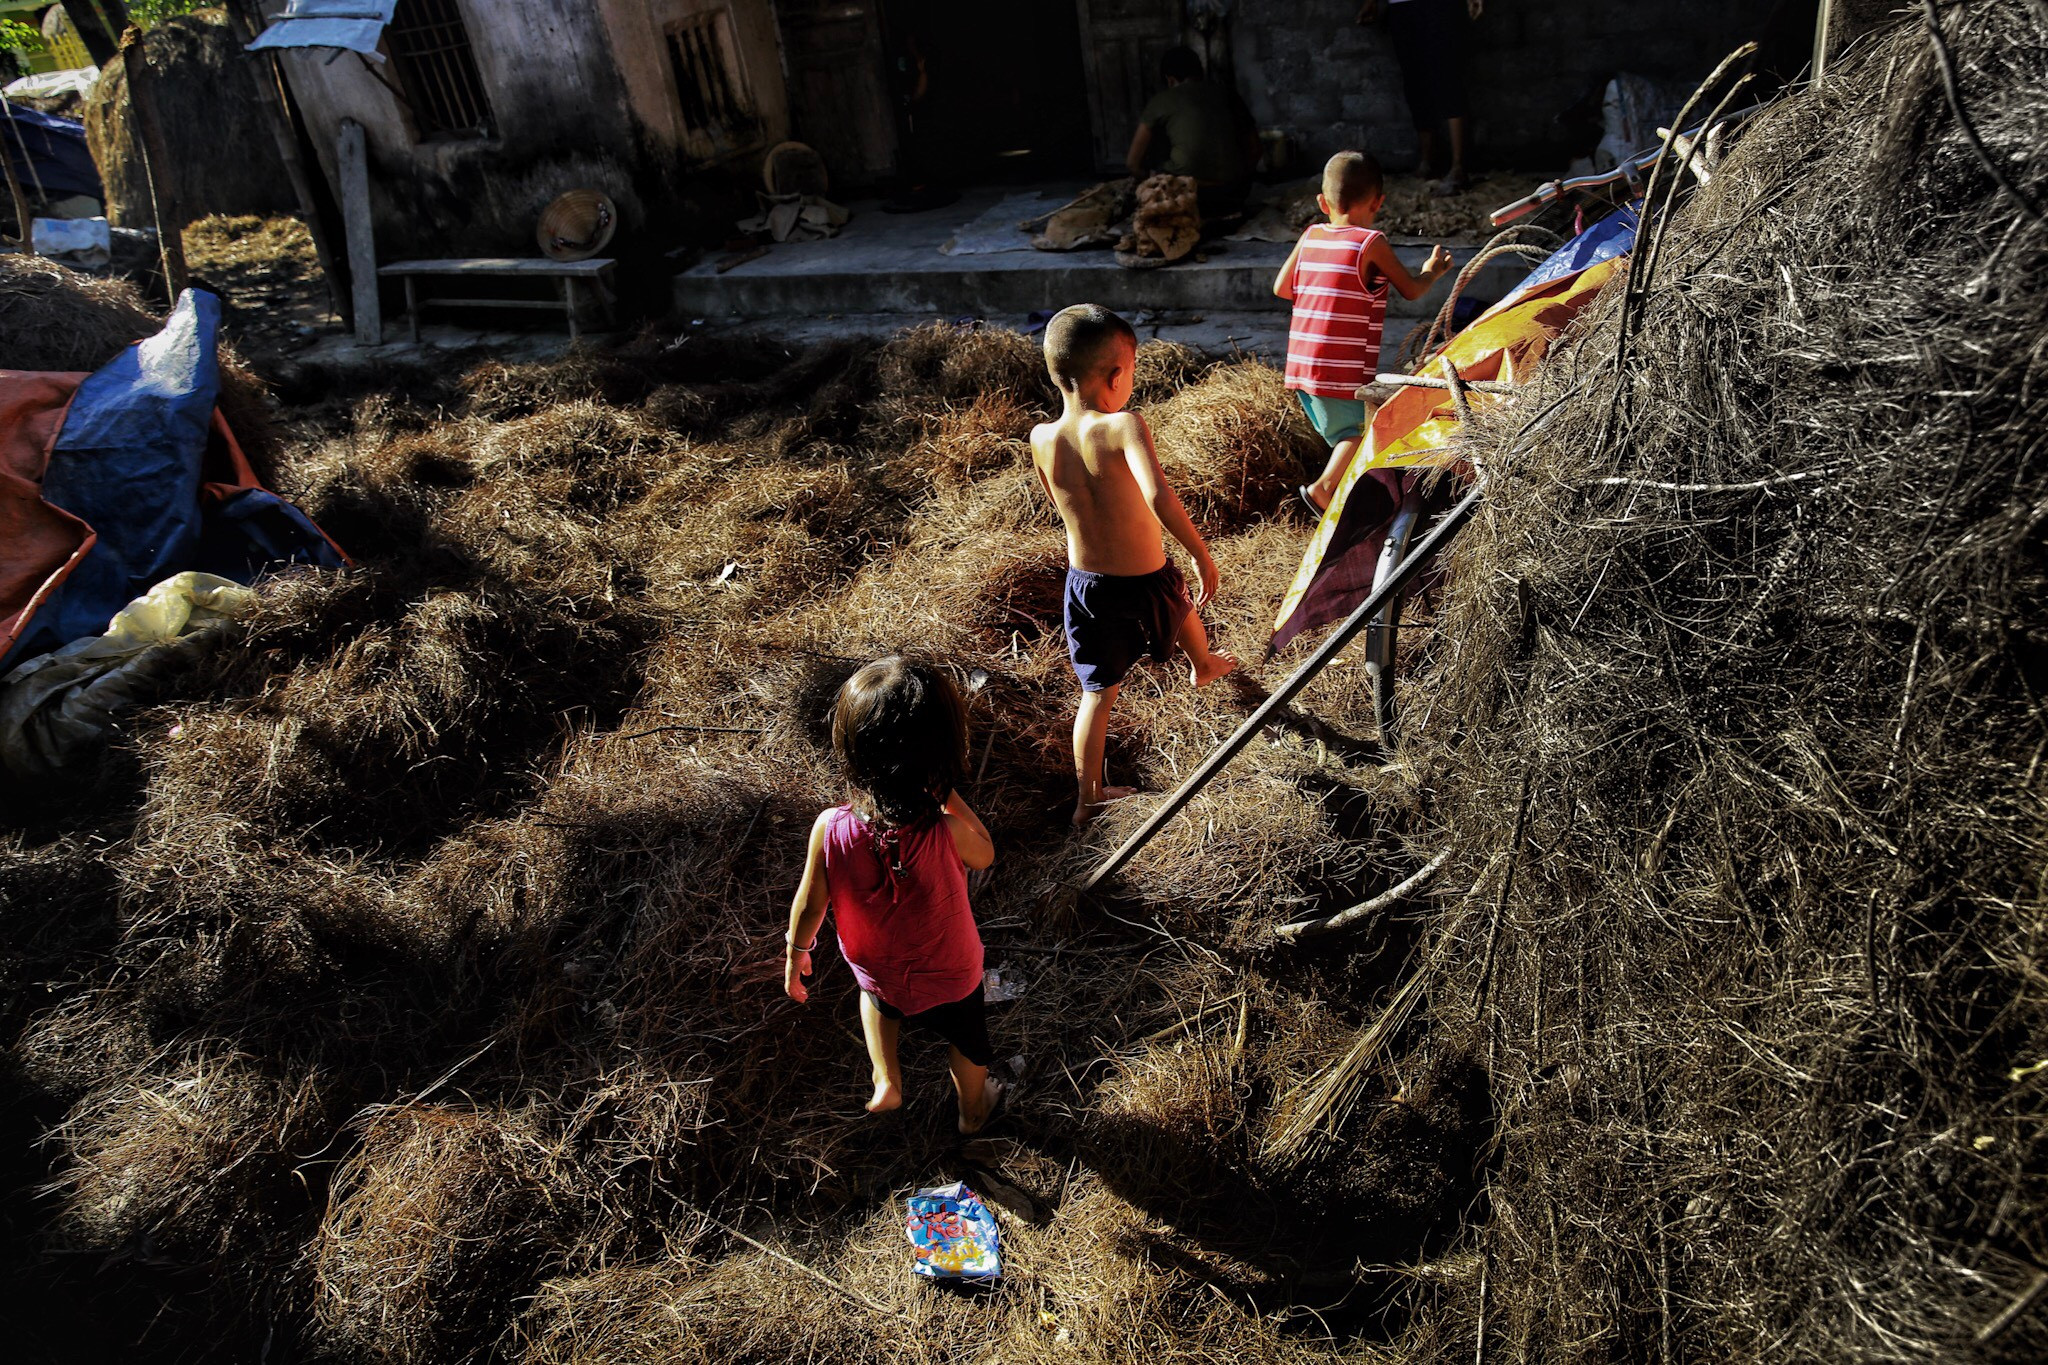 Lũ trẻ chơi đùa giữa những đụn rơm khô phơi đầy sân nhà. Ảnh: Hải Vương